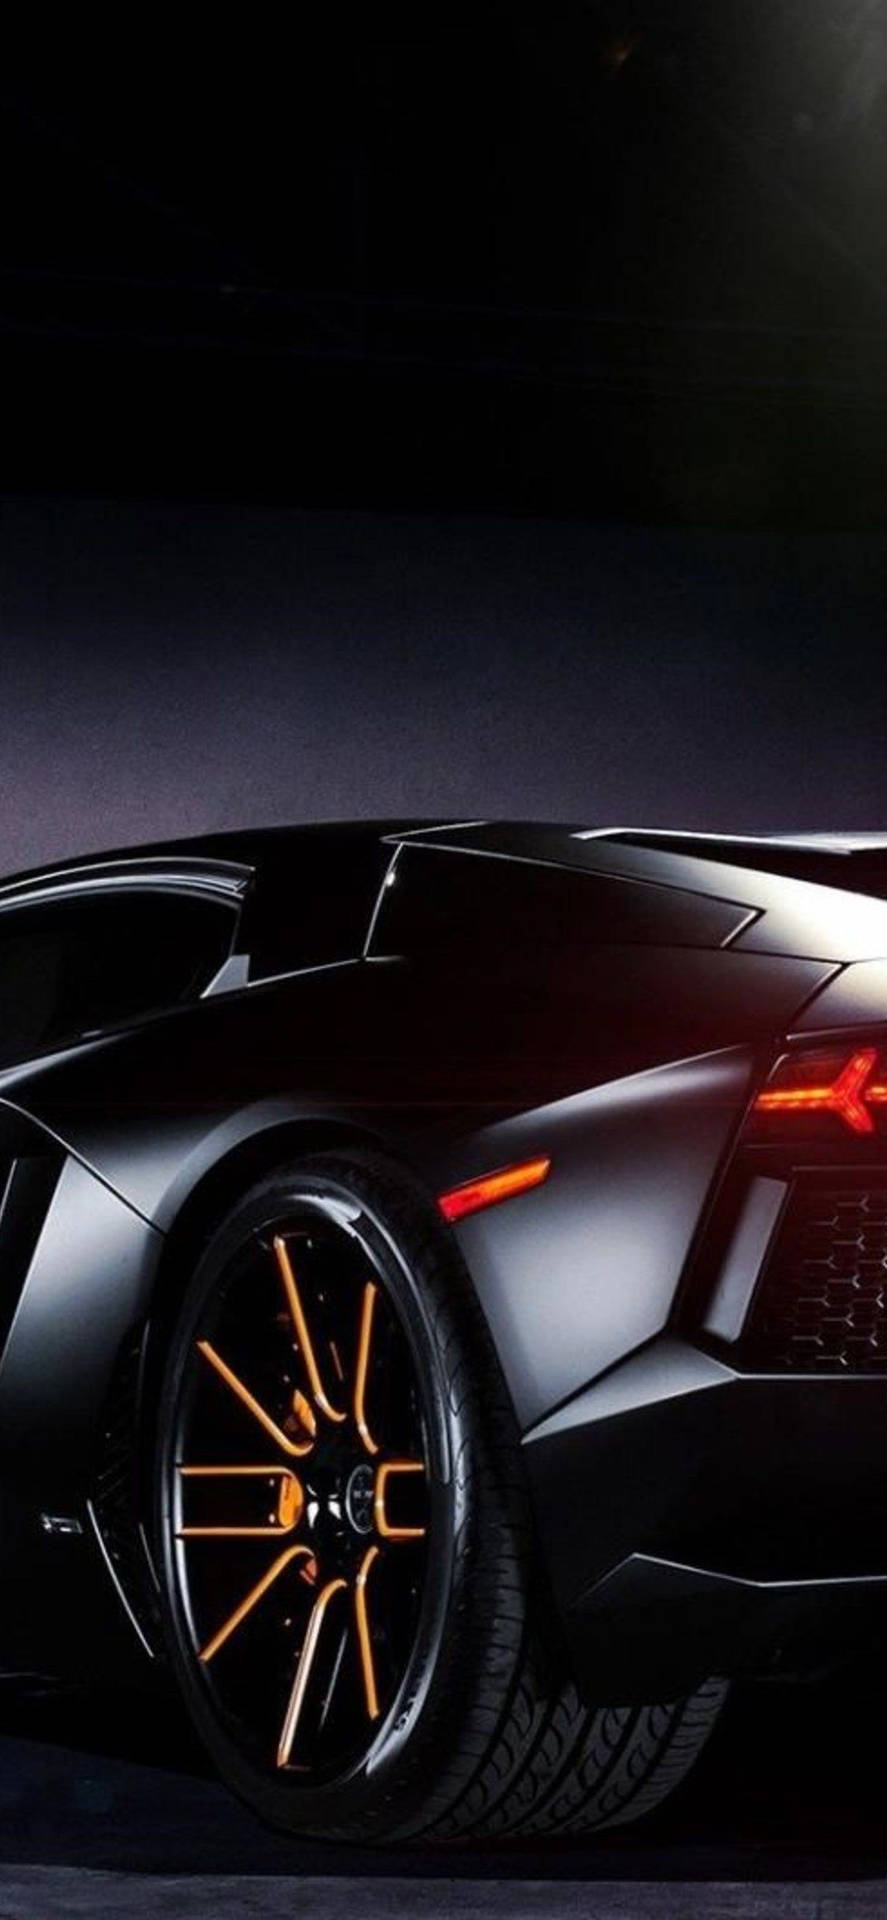 Lamborghini iPhone Black Aesthetic Rear Wheels Wallpaper